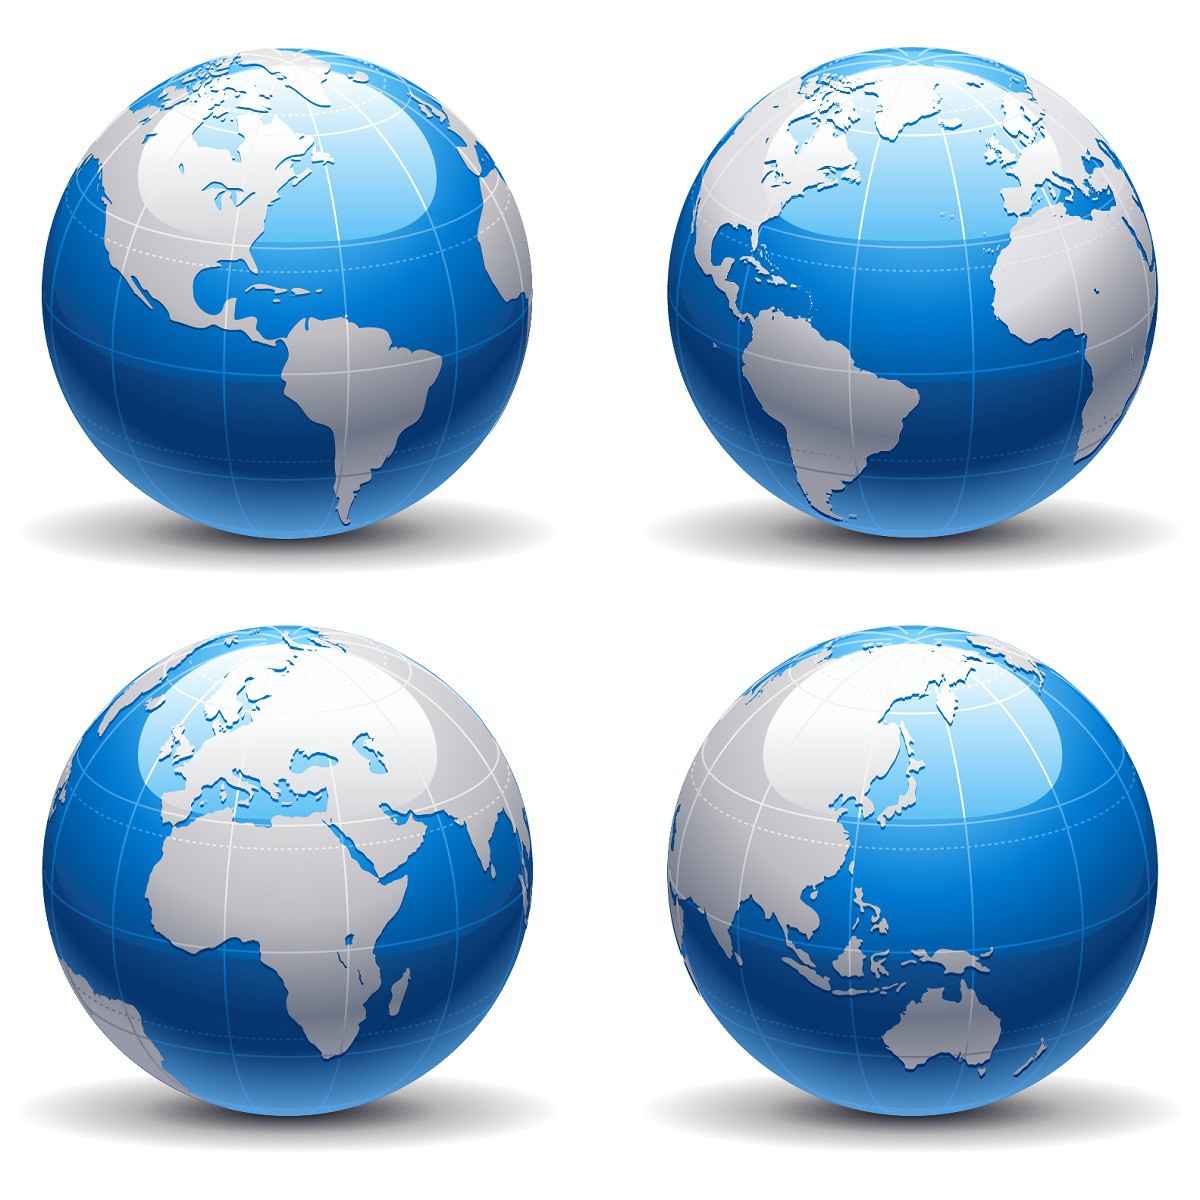 Blue earth globe